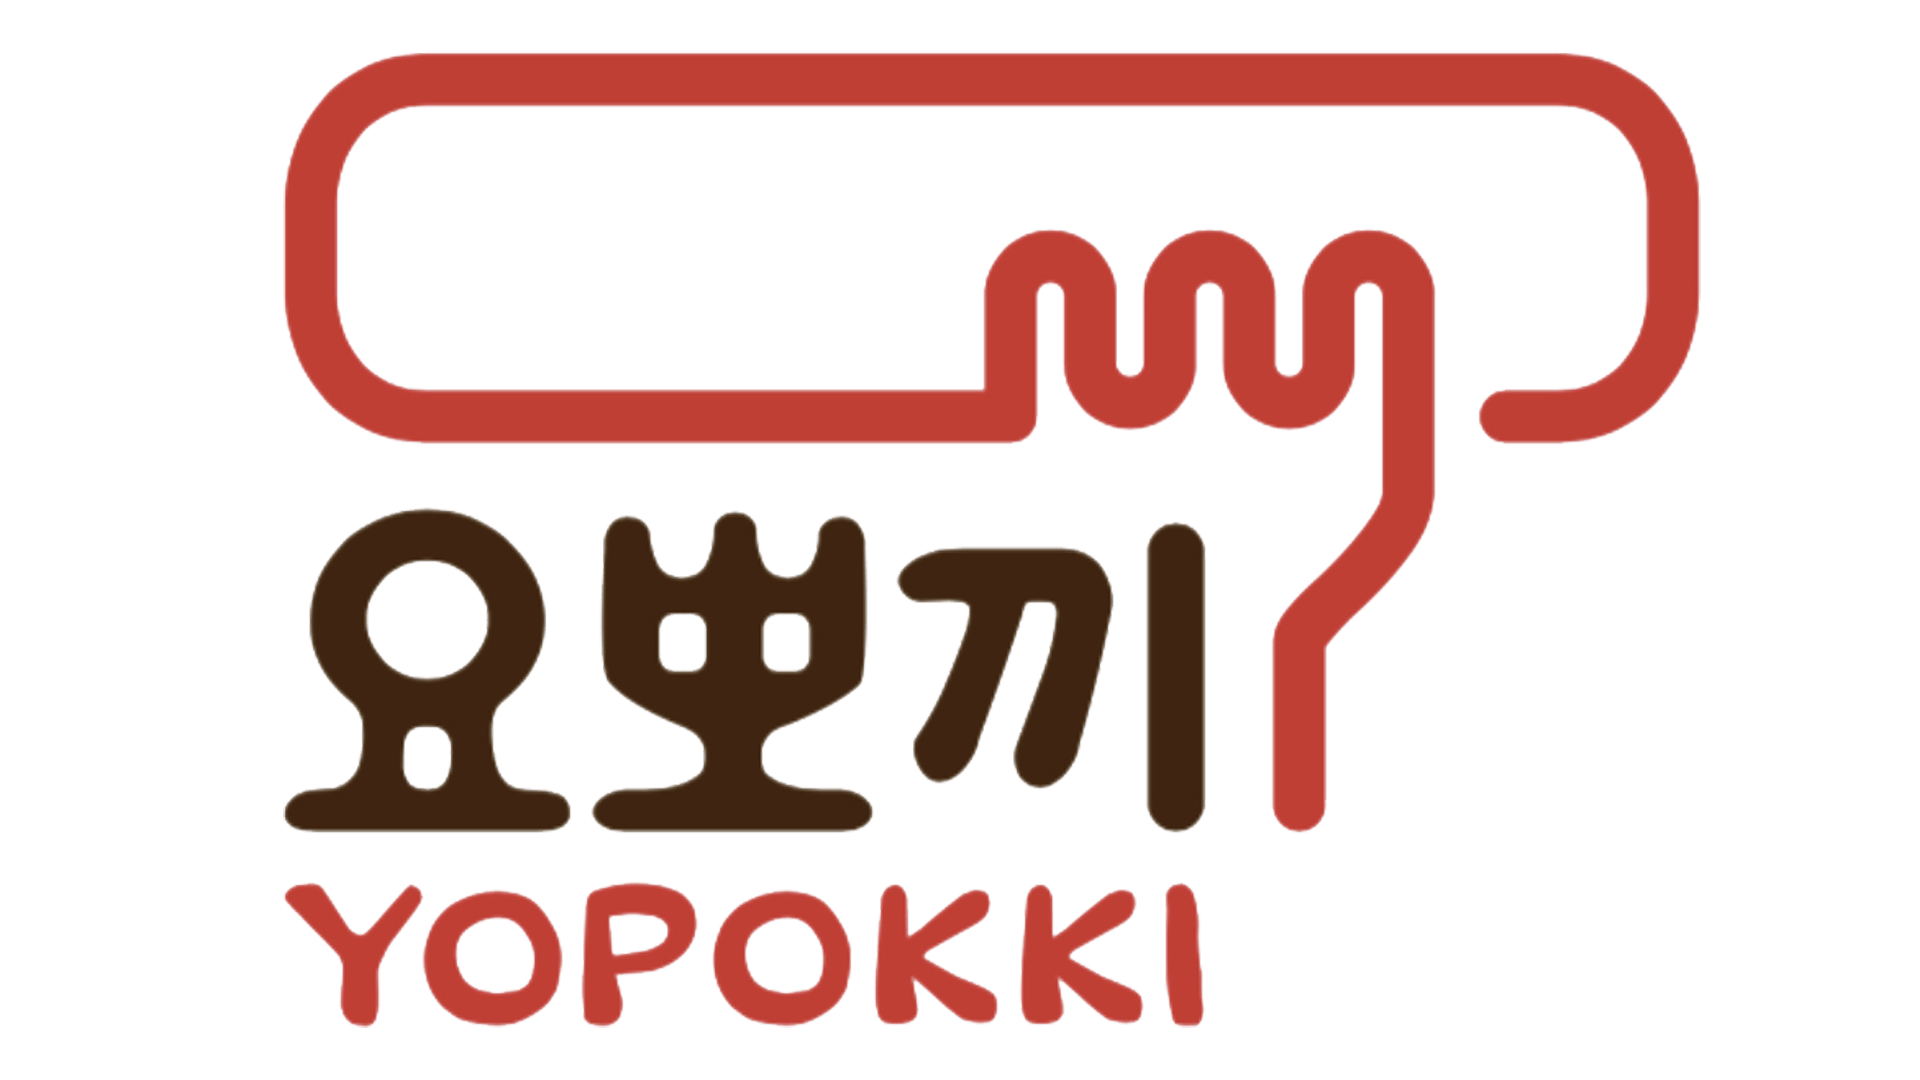 Marque: YOPOKKI